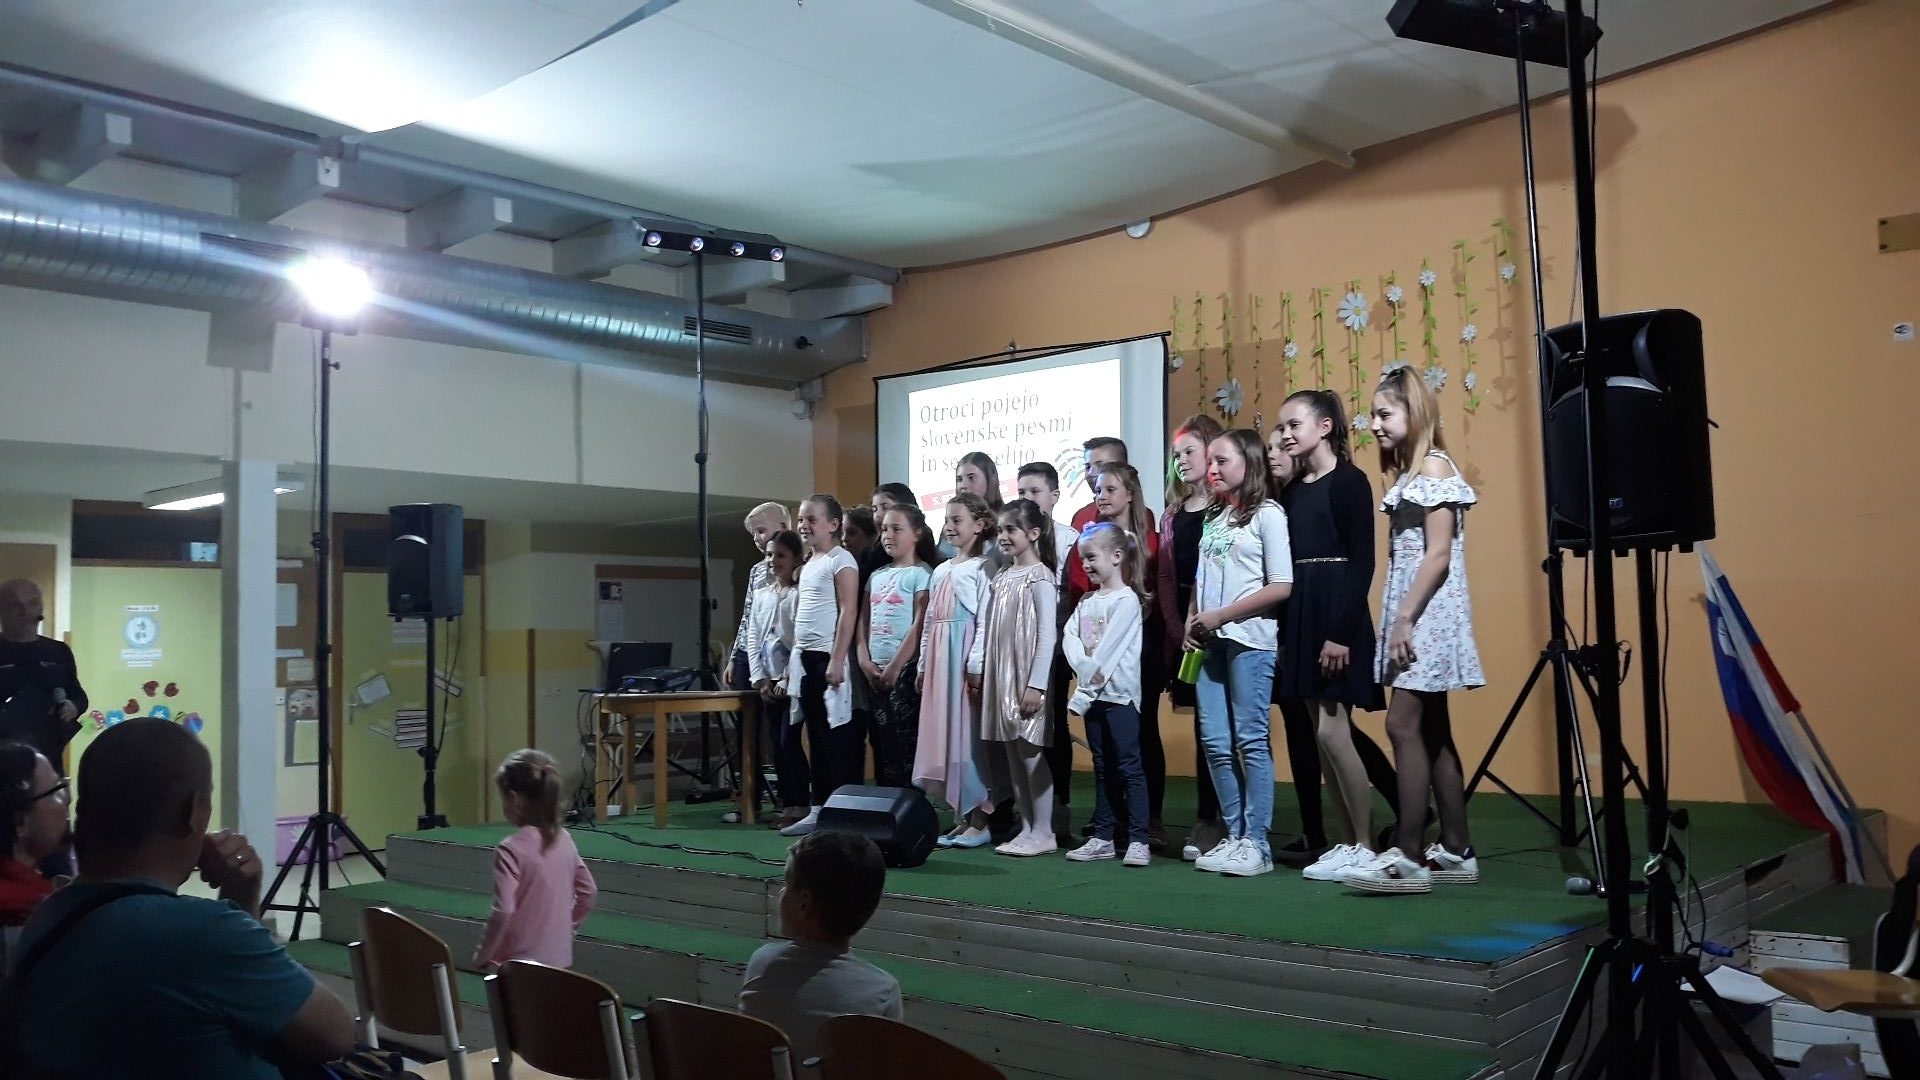 Otroci pojejo slovenske pesmi in se veselijo 2019